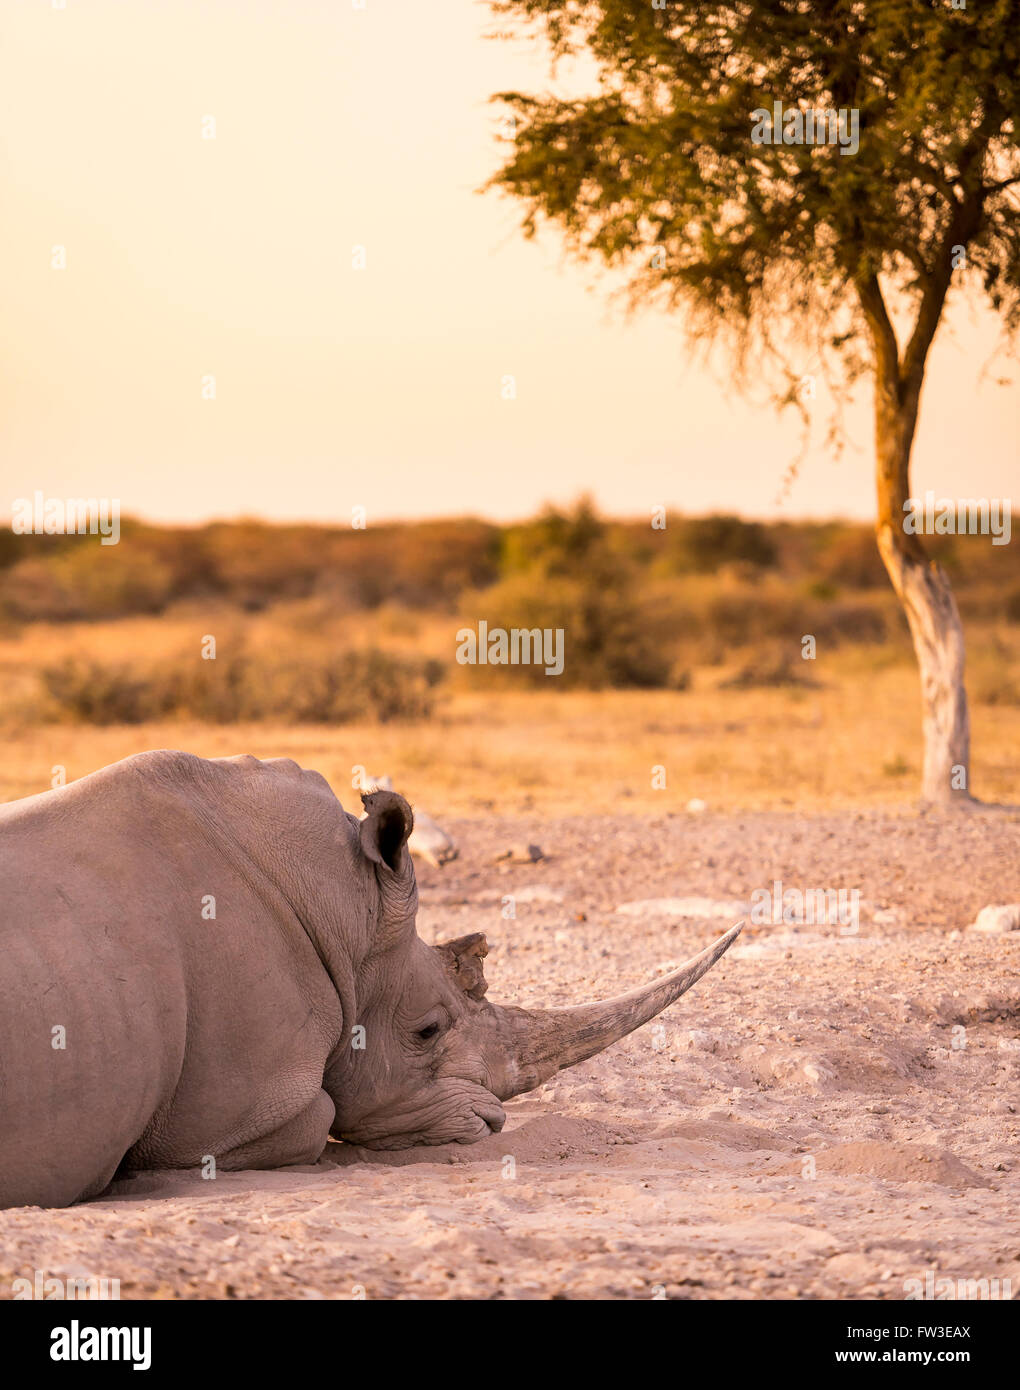 Le rhinocéros blanc rhinocéros ou lors d'un safari au Botswana, l'Afrique Banque D'Images